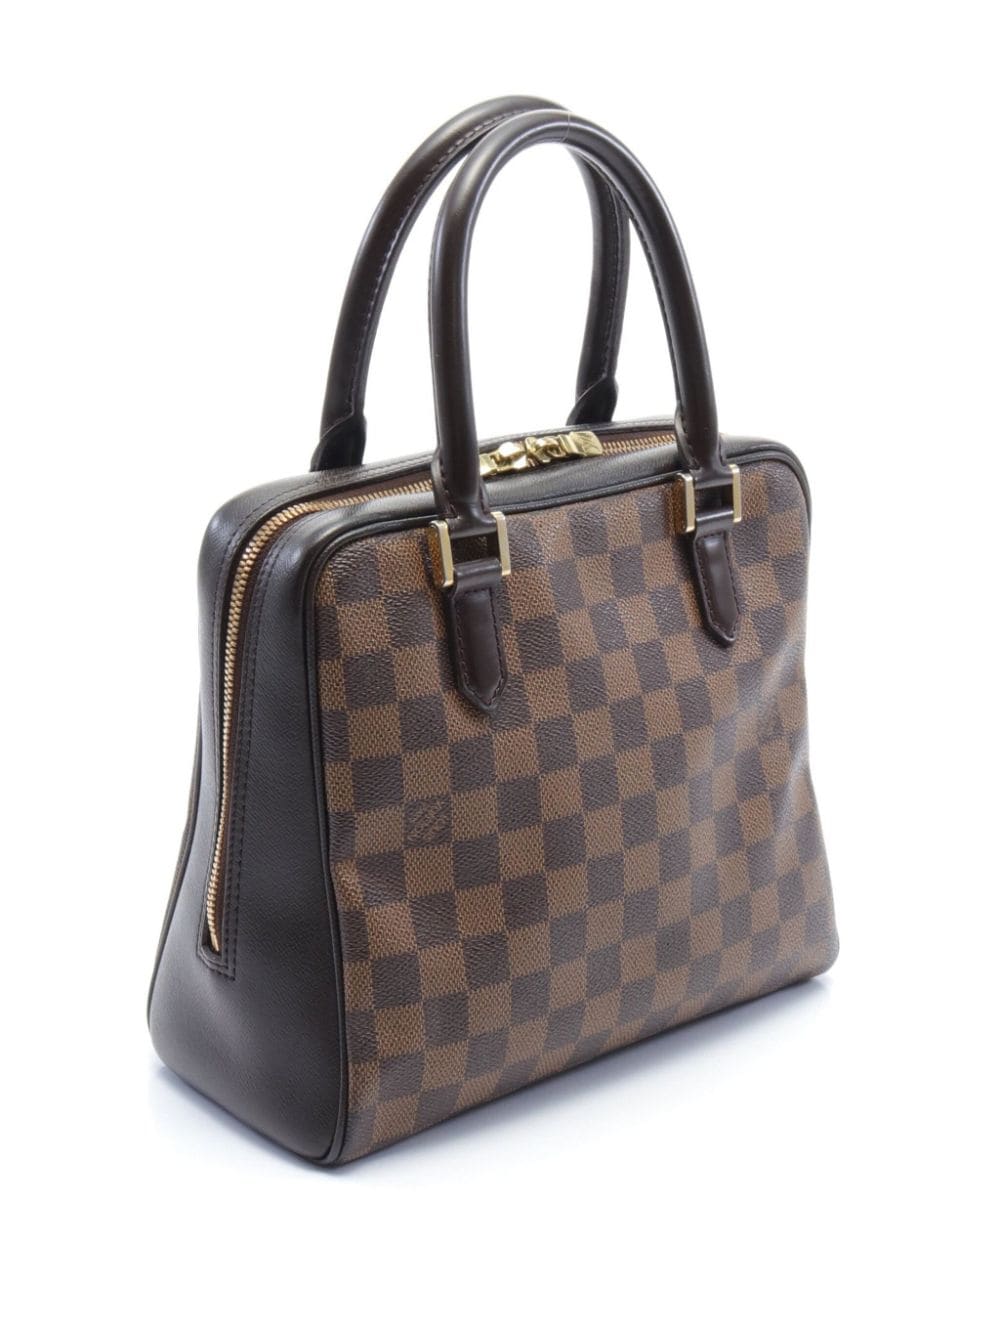 Louis Vuitton Pre-Owned 2000 Brera handbag - Bruin